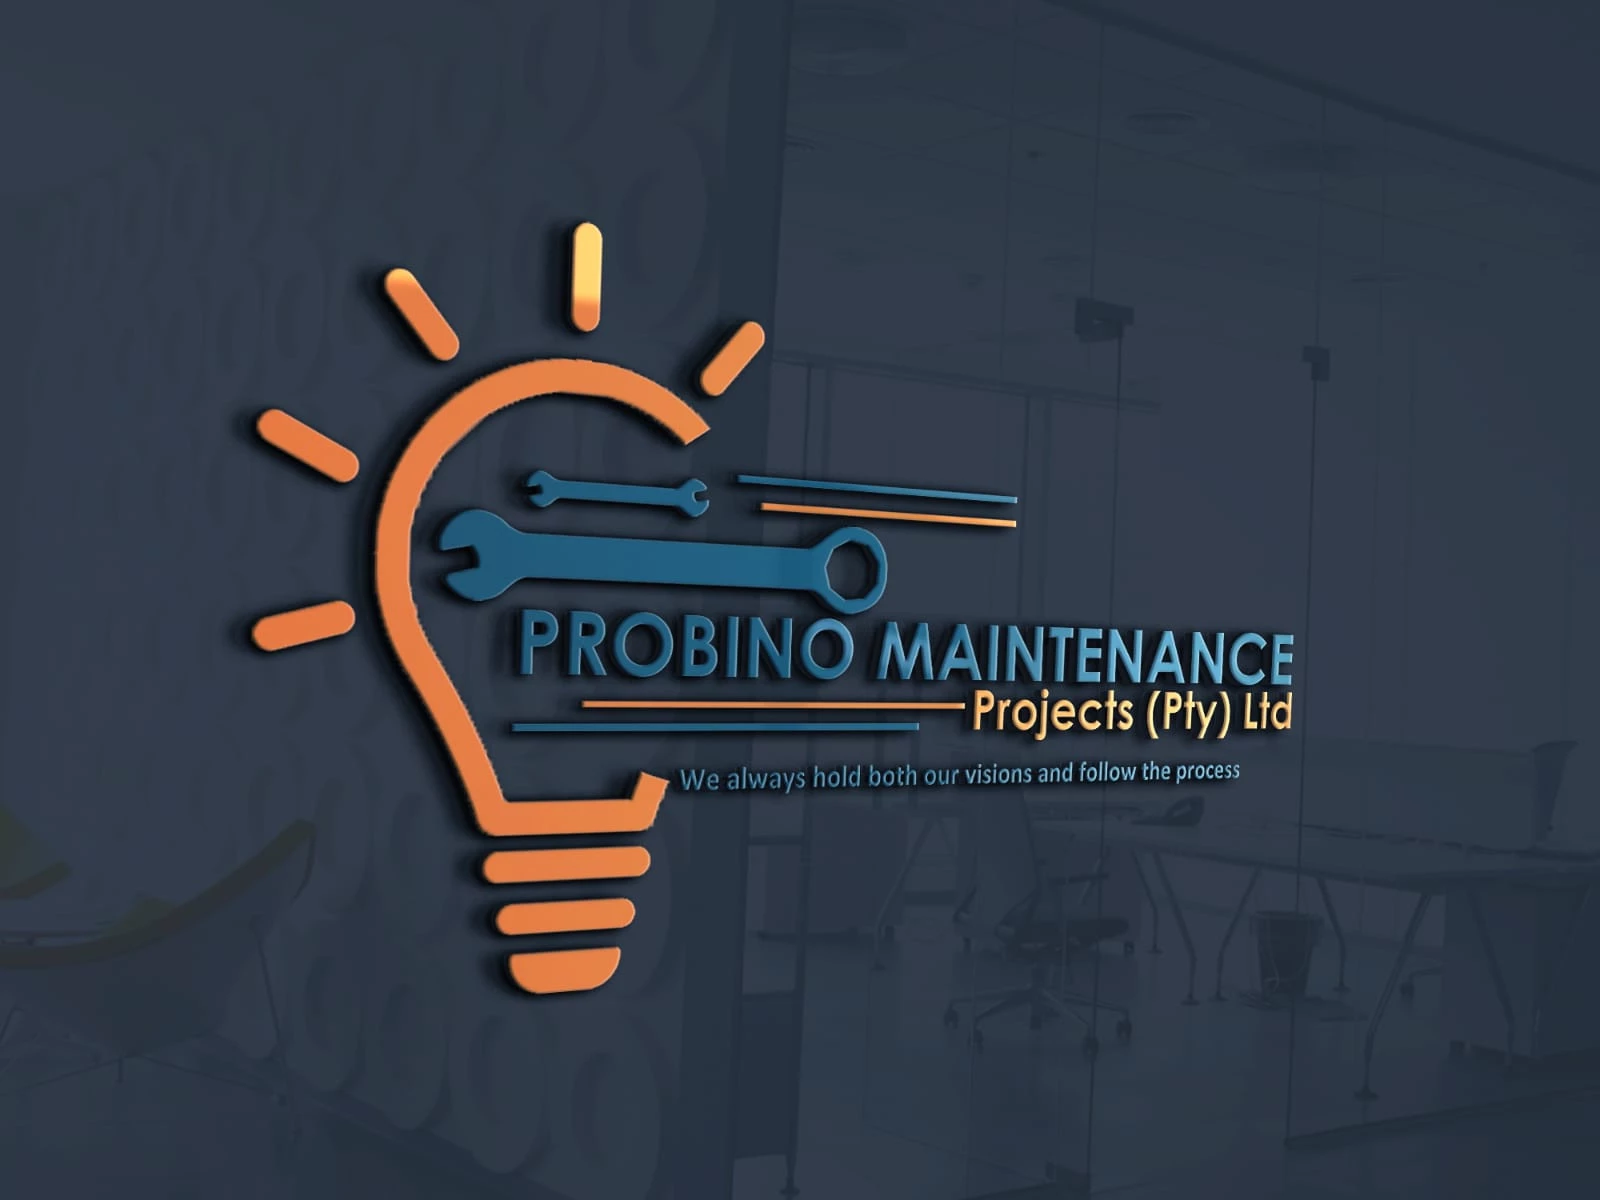 Probino maintenance projects (Pty) Ltd